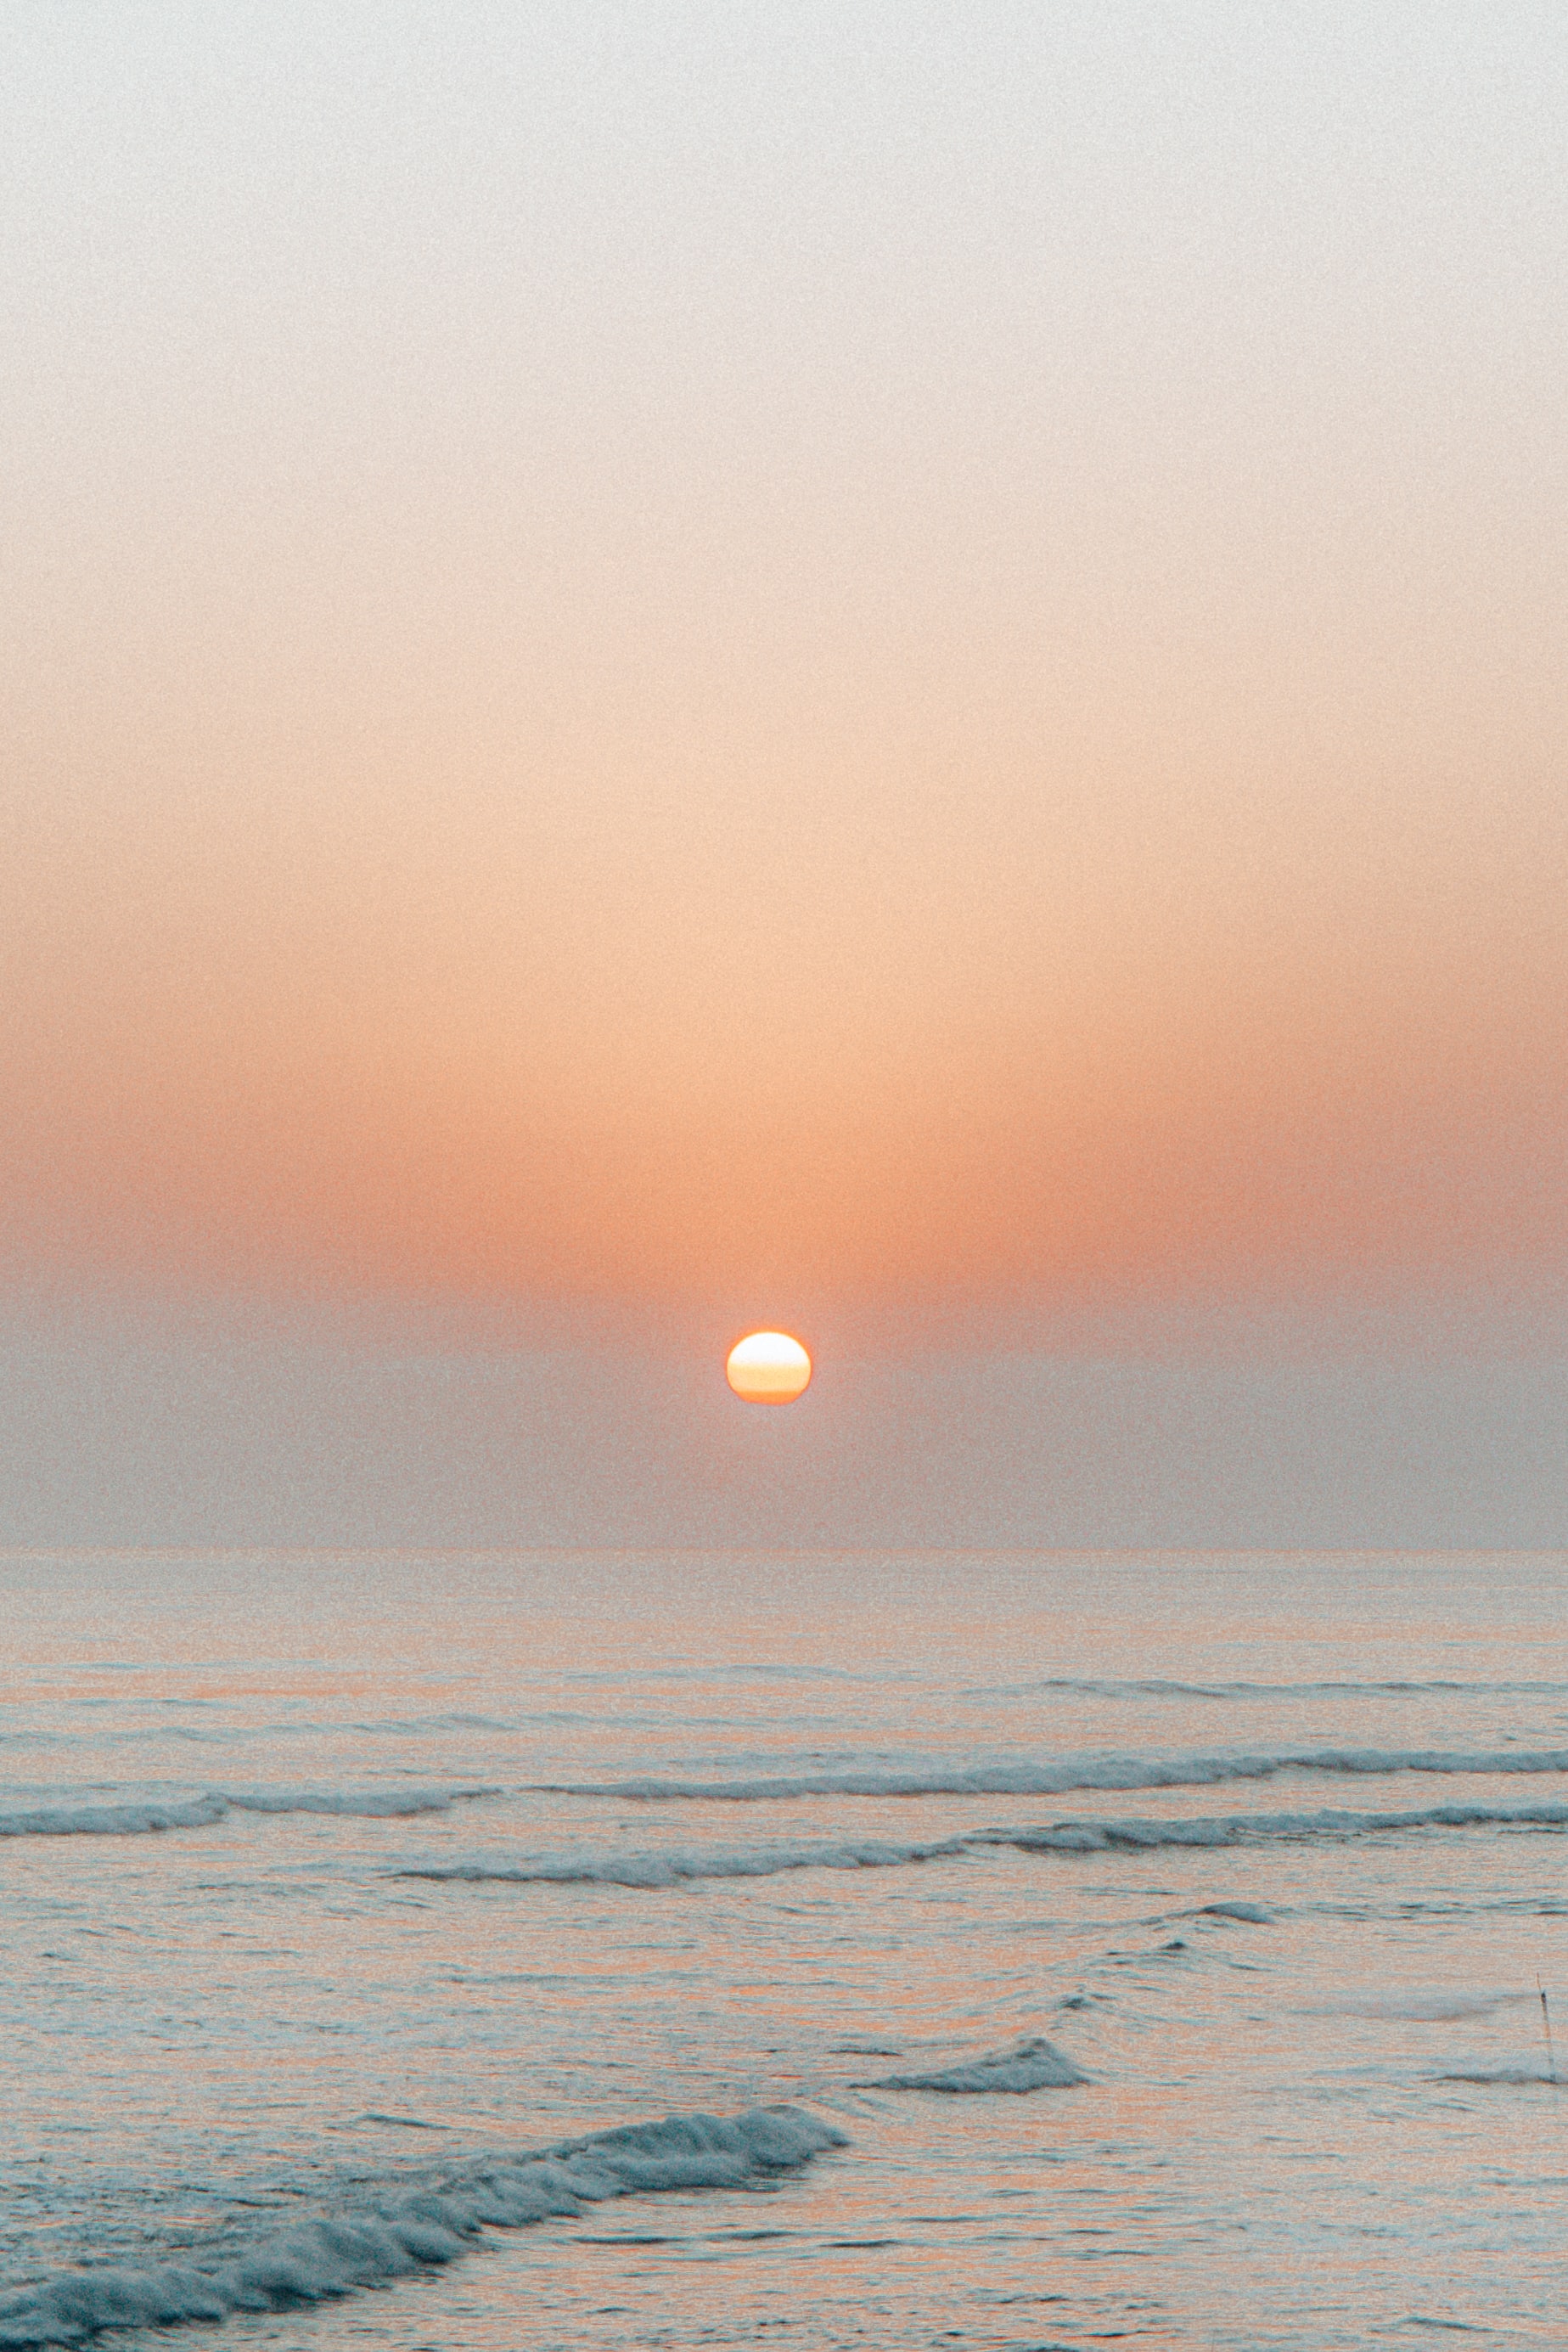 Скачать обои бесплатно Природа, Закат, Солнце, Волны, Море картинка на рабочий стол ПК